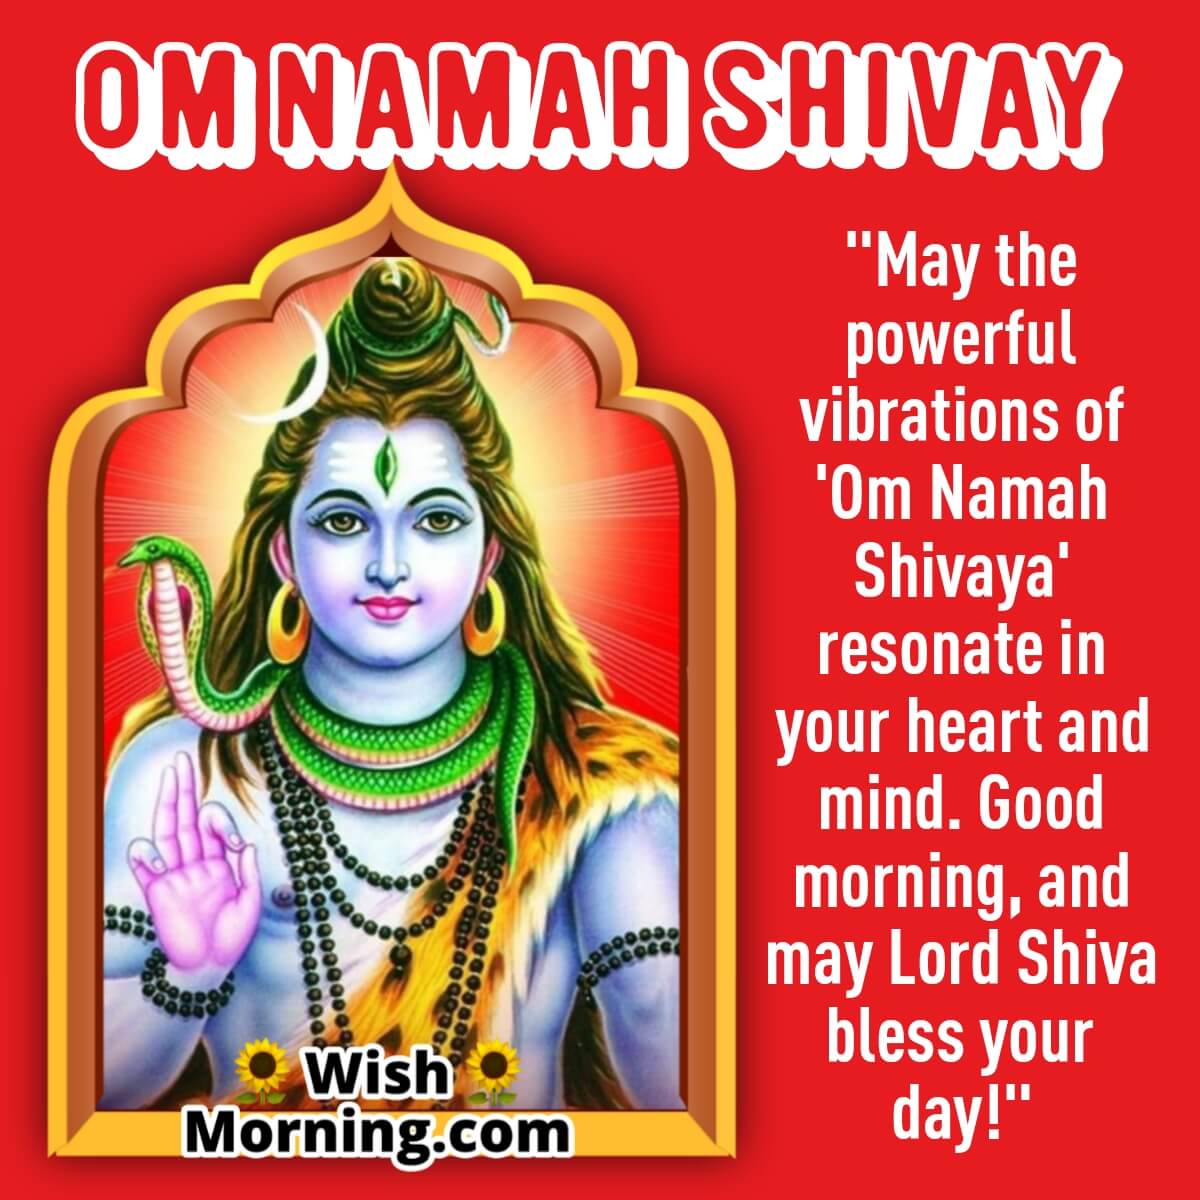 Good Morning Om Namah Shivay